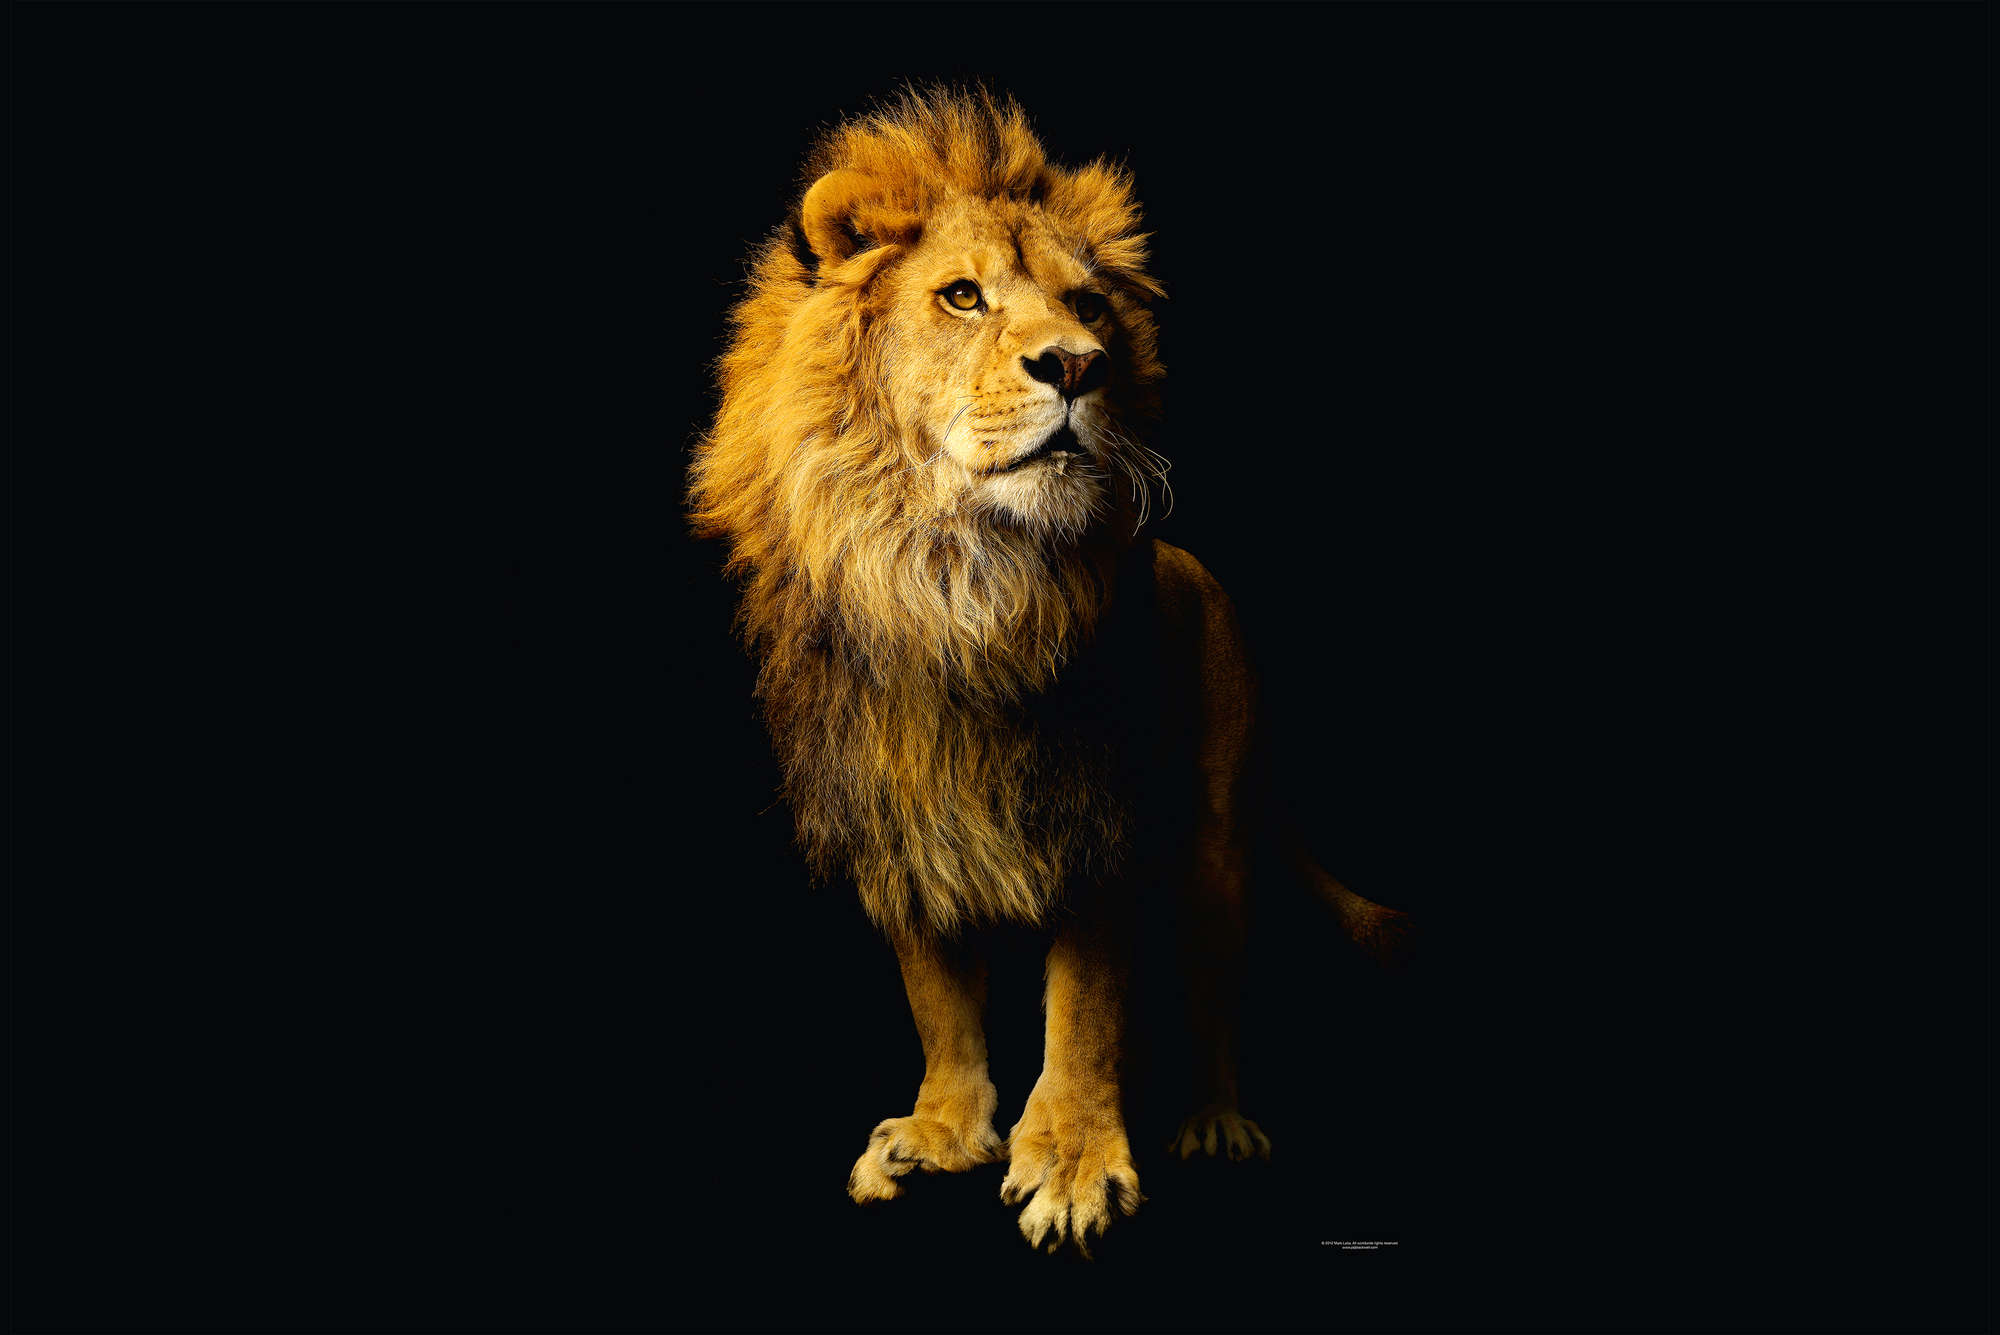             Leeuw - fotobehang met dierenportret
        